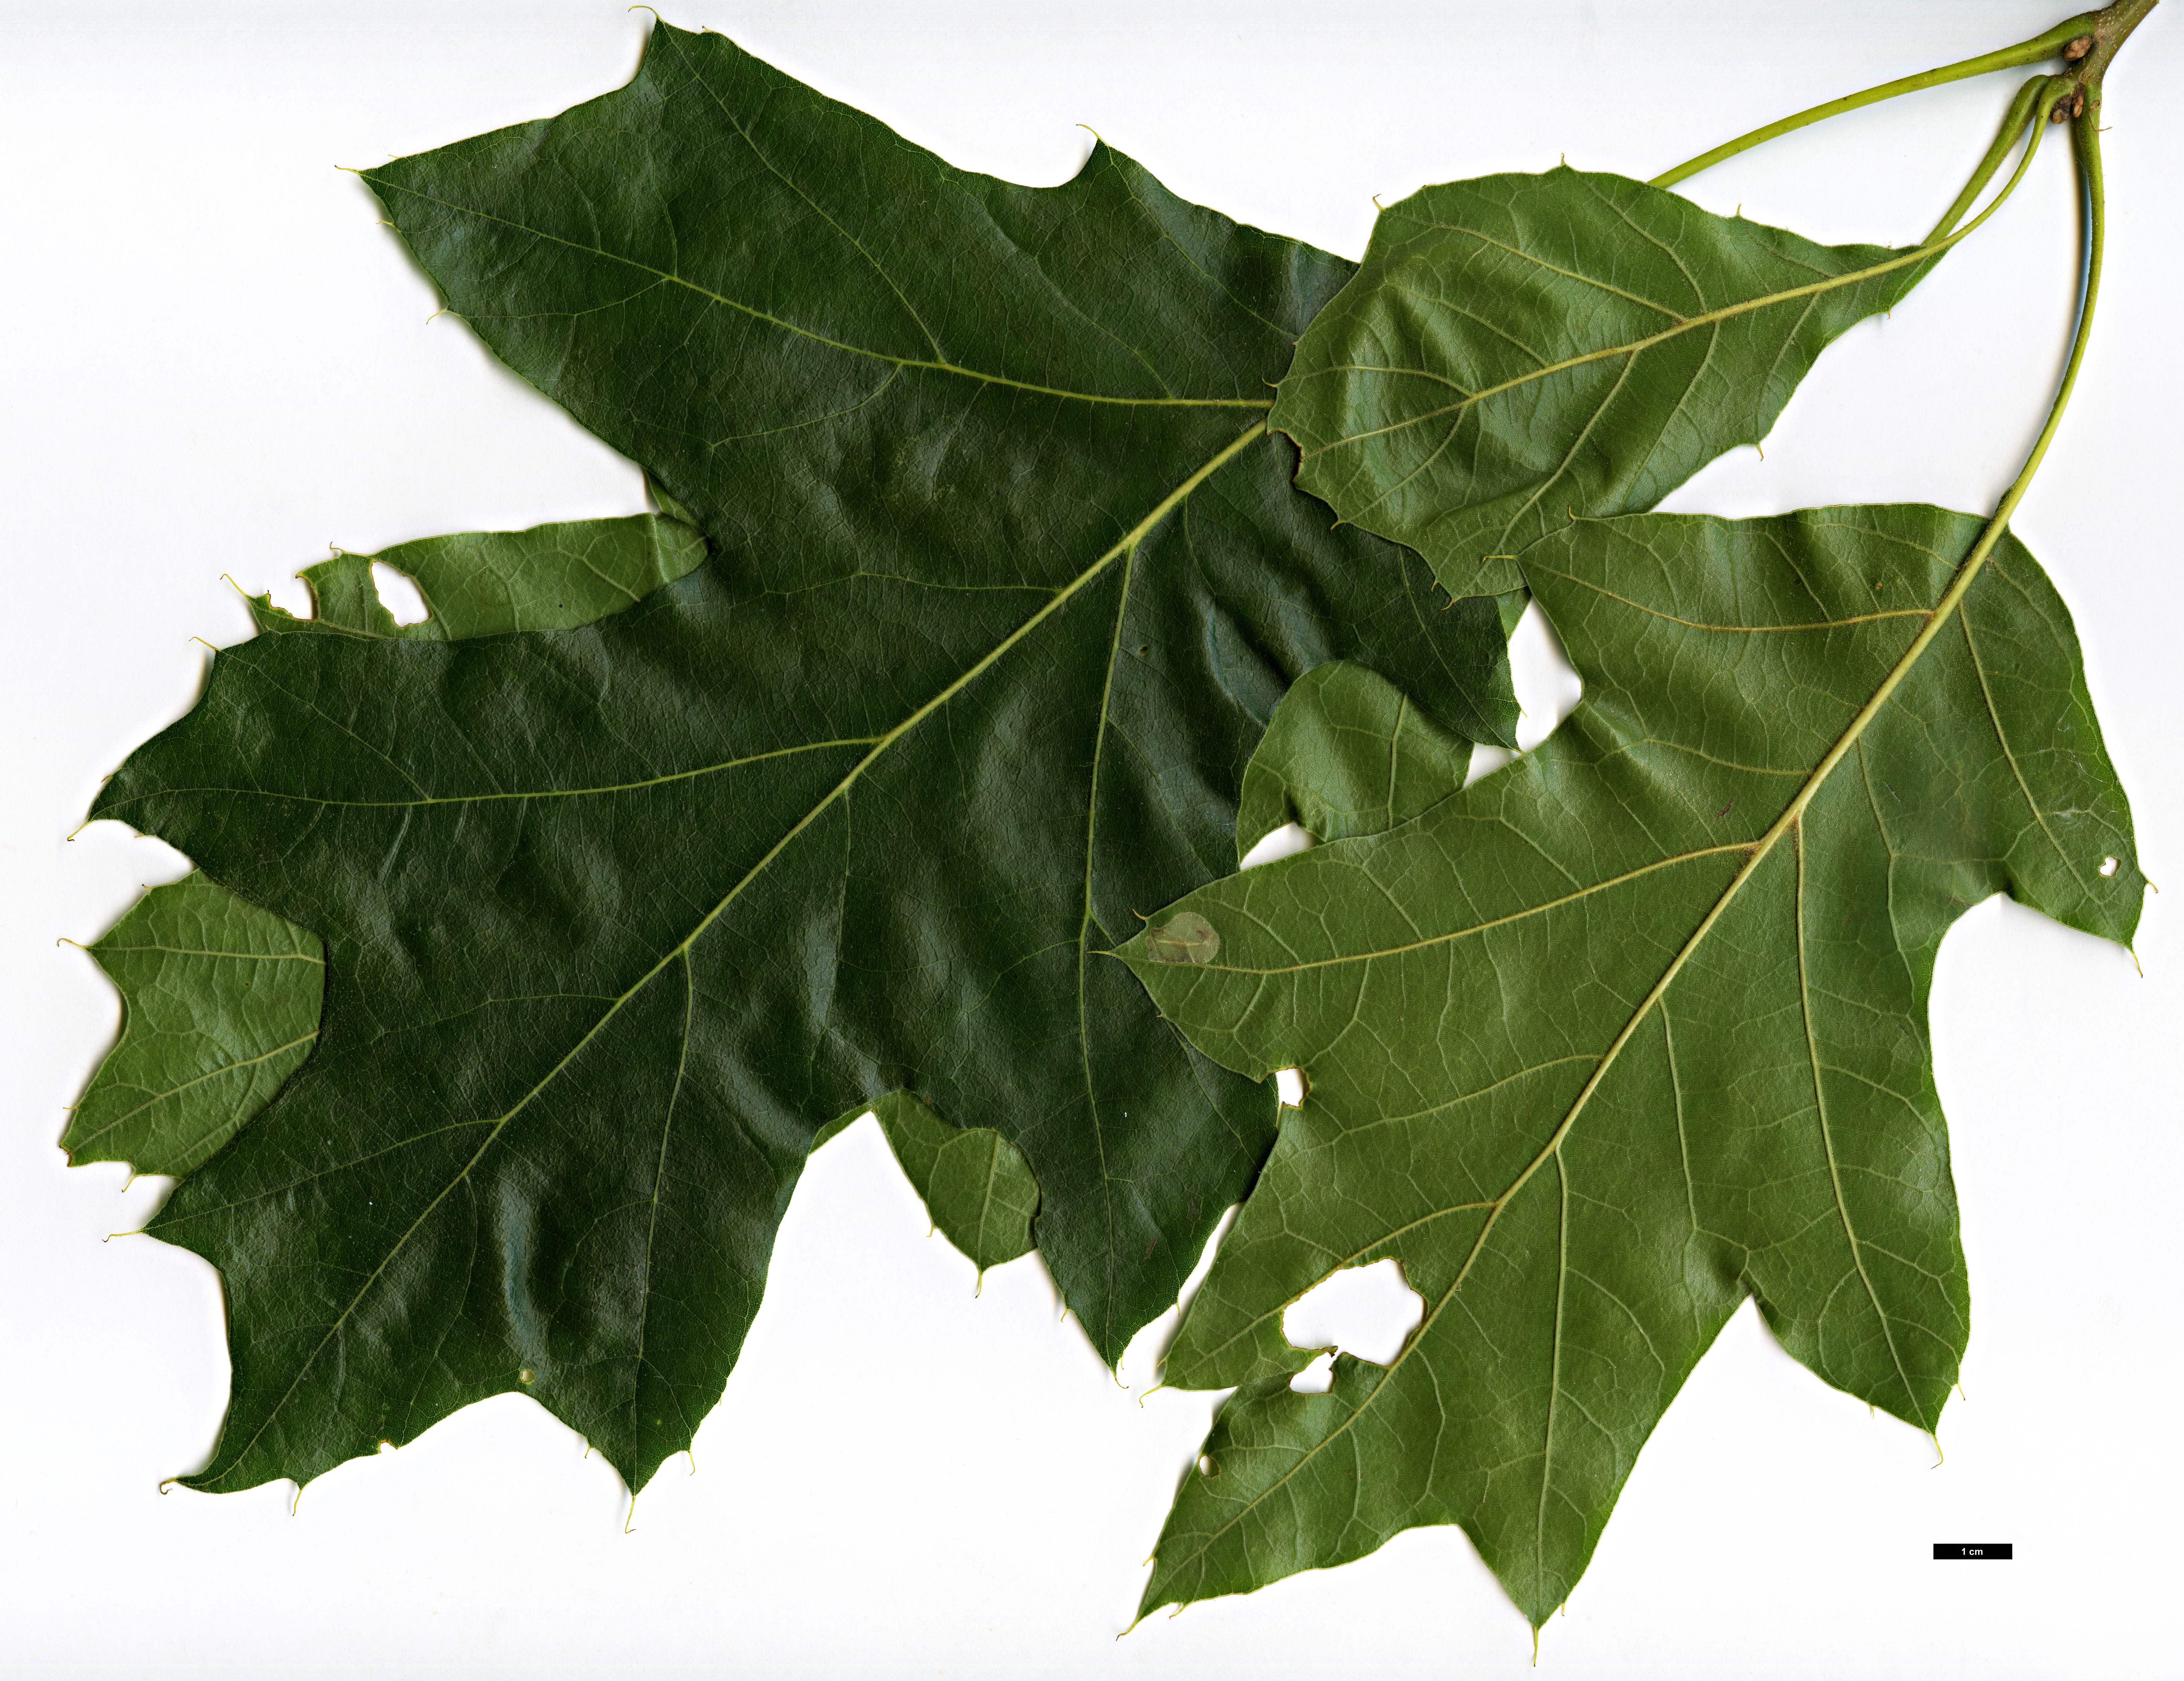 High resolution image: Family: Fagaceae - Genus: Quercus - Taxon: velutina - SpeciesSub: 'Magnifica'